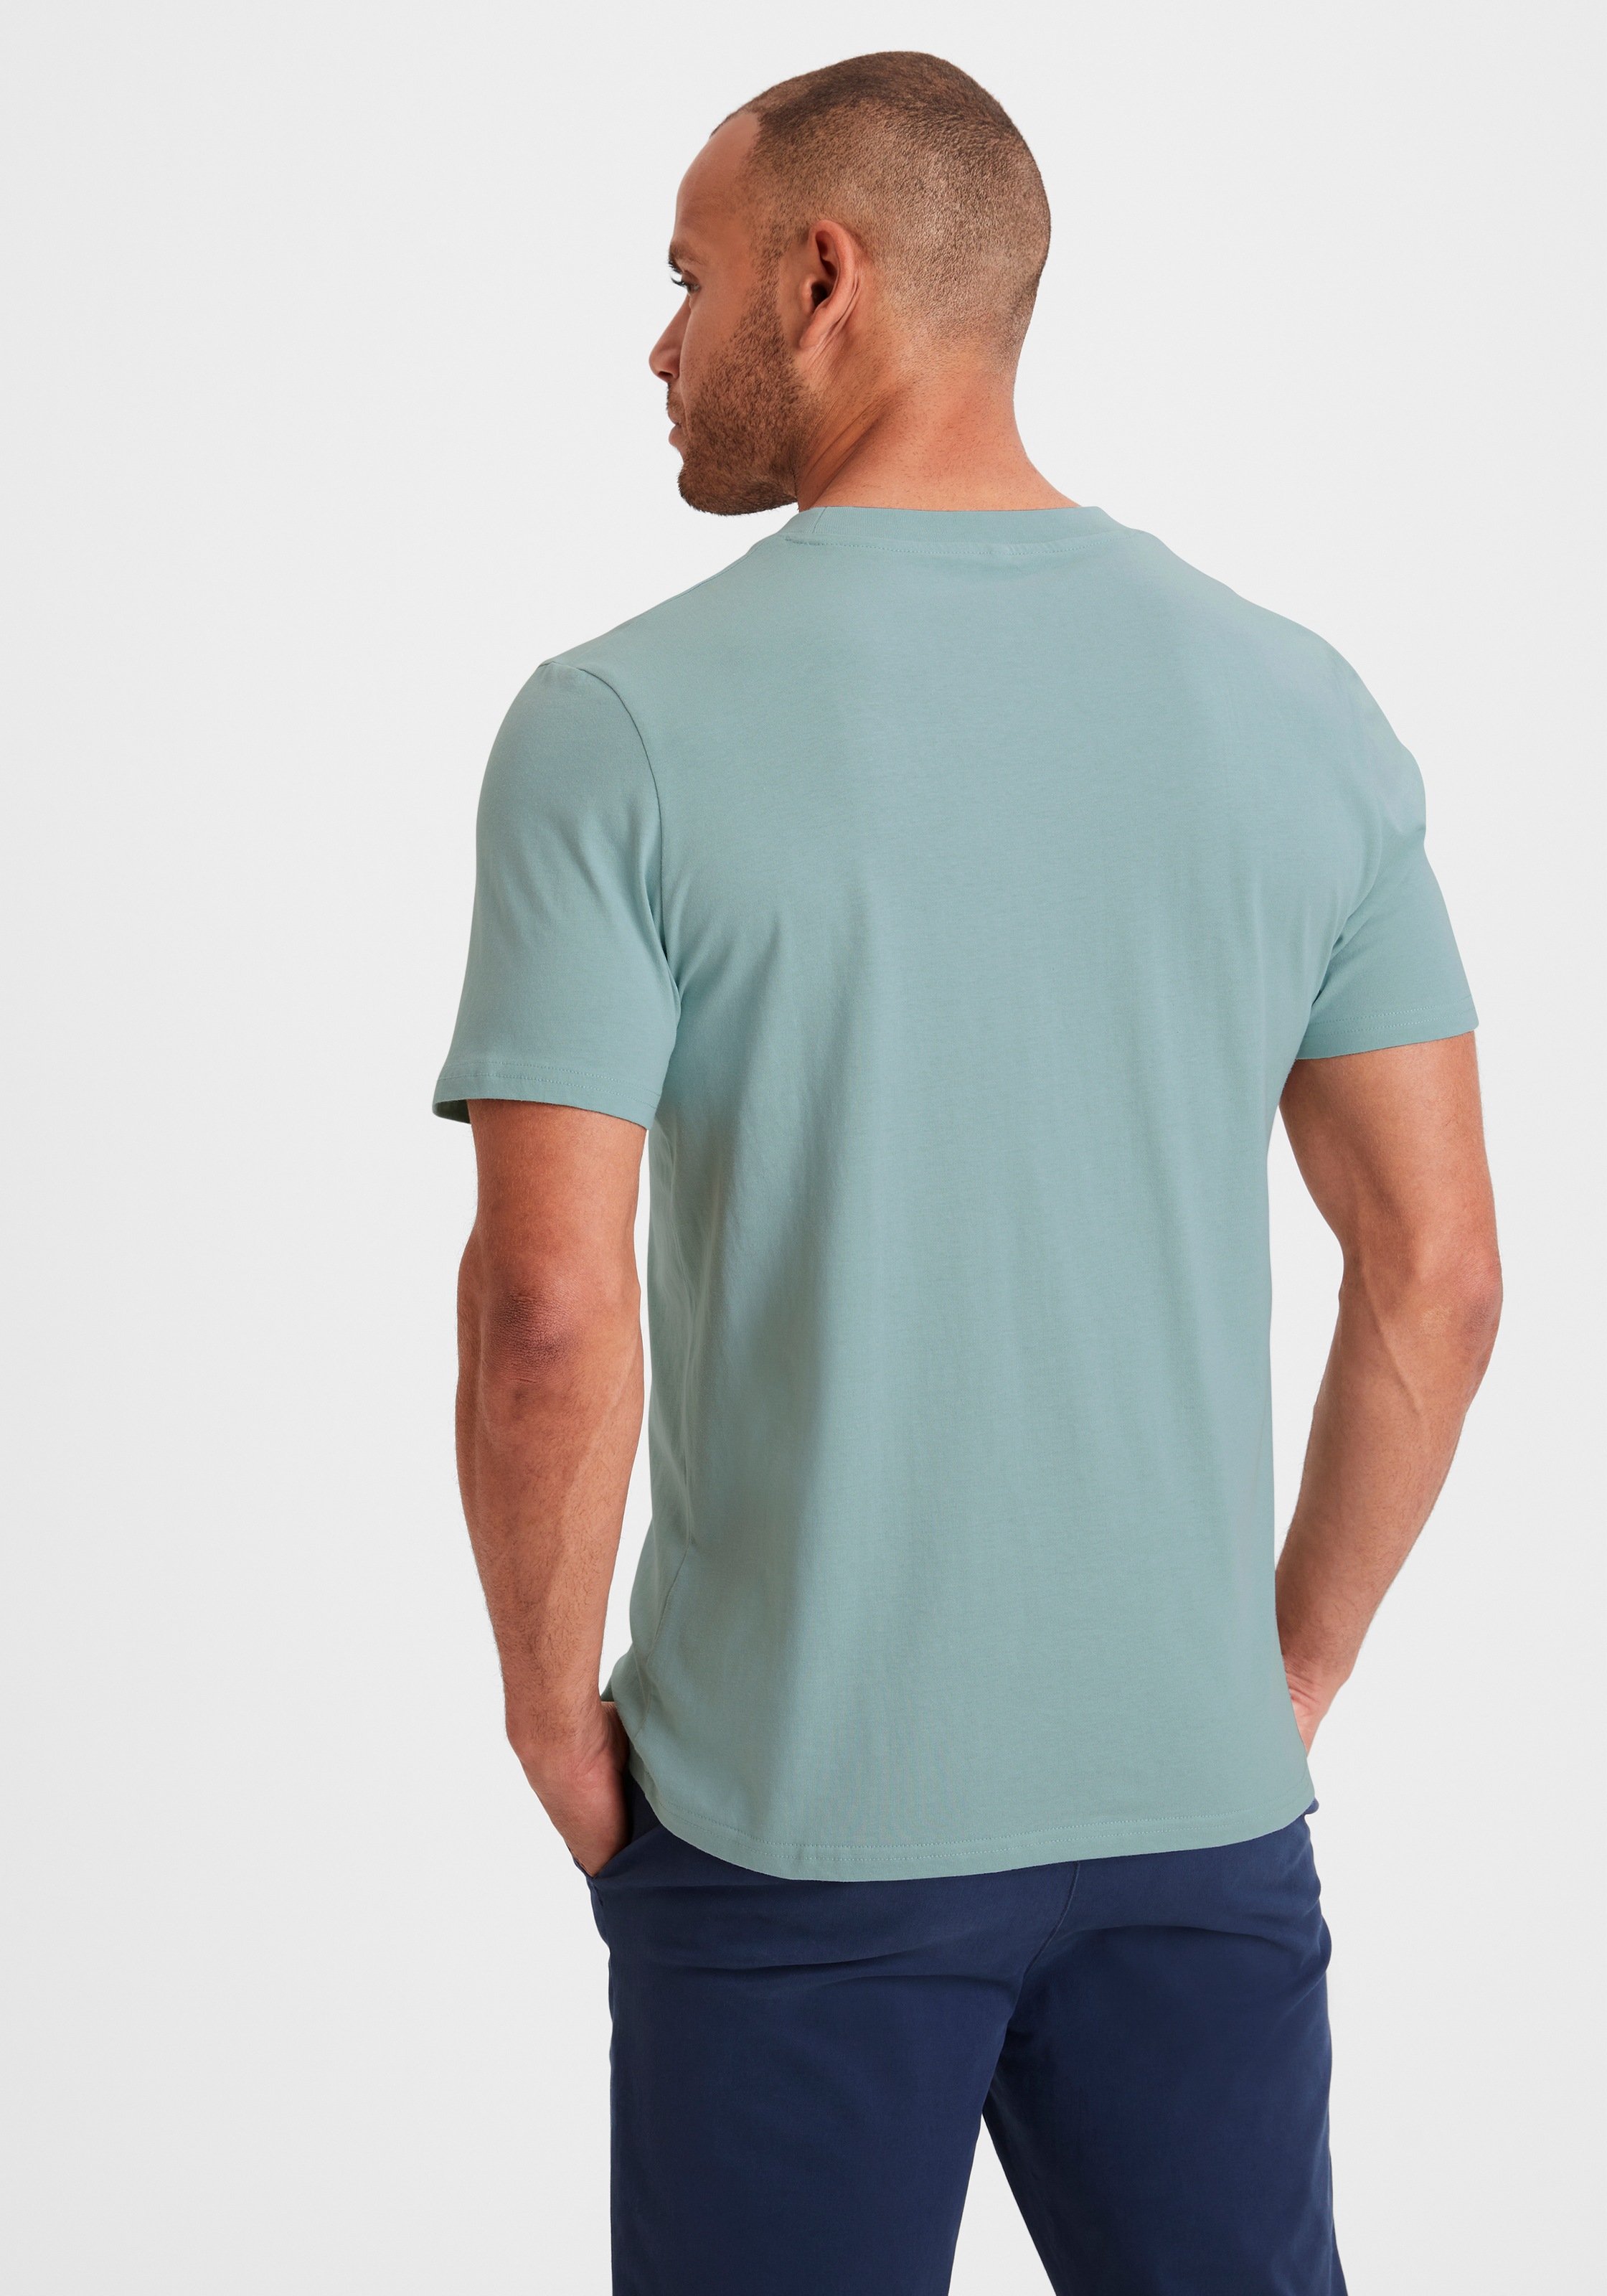 in KangaROOS T-Shirt, ein Must-Have (2er-Pack), online bei klassischer Form